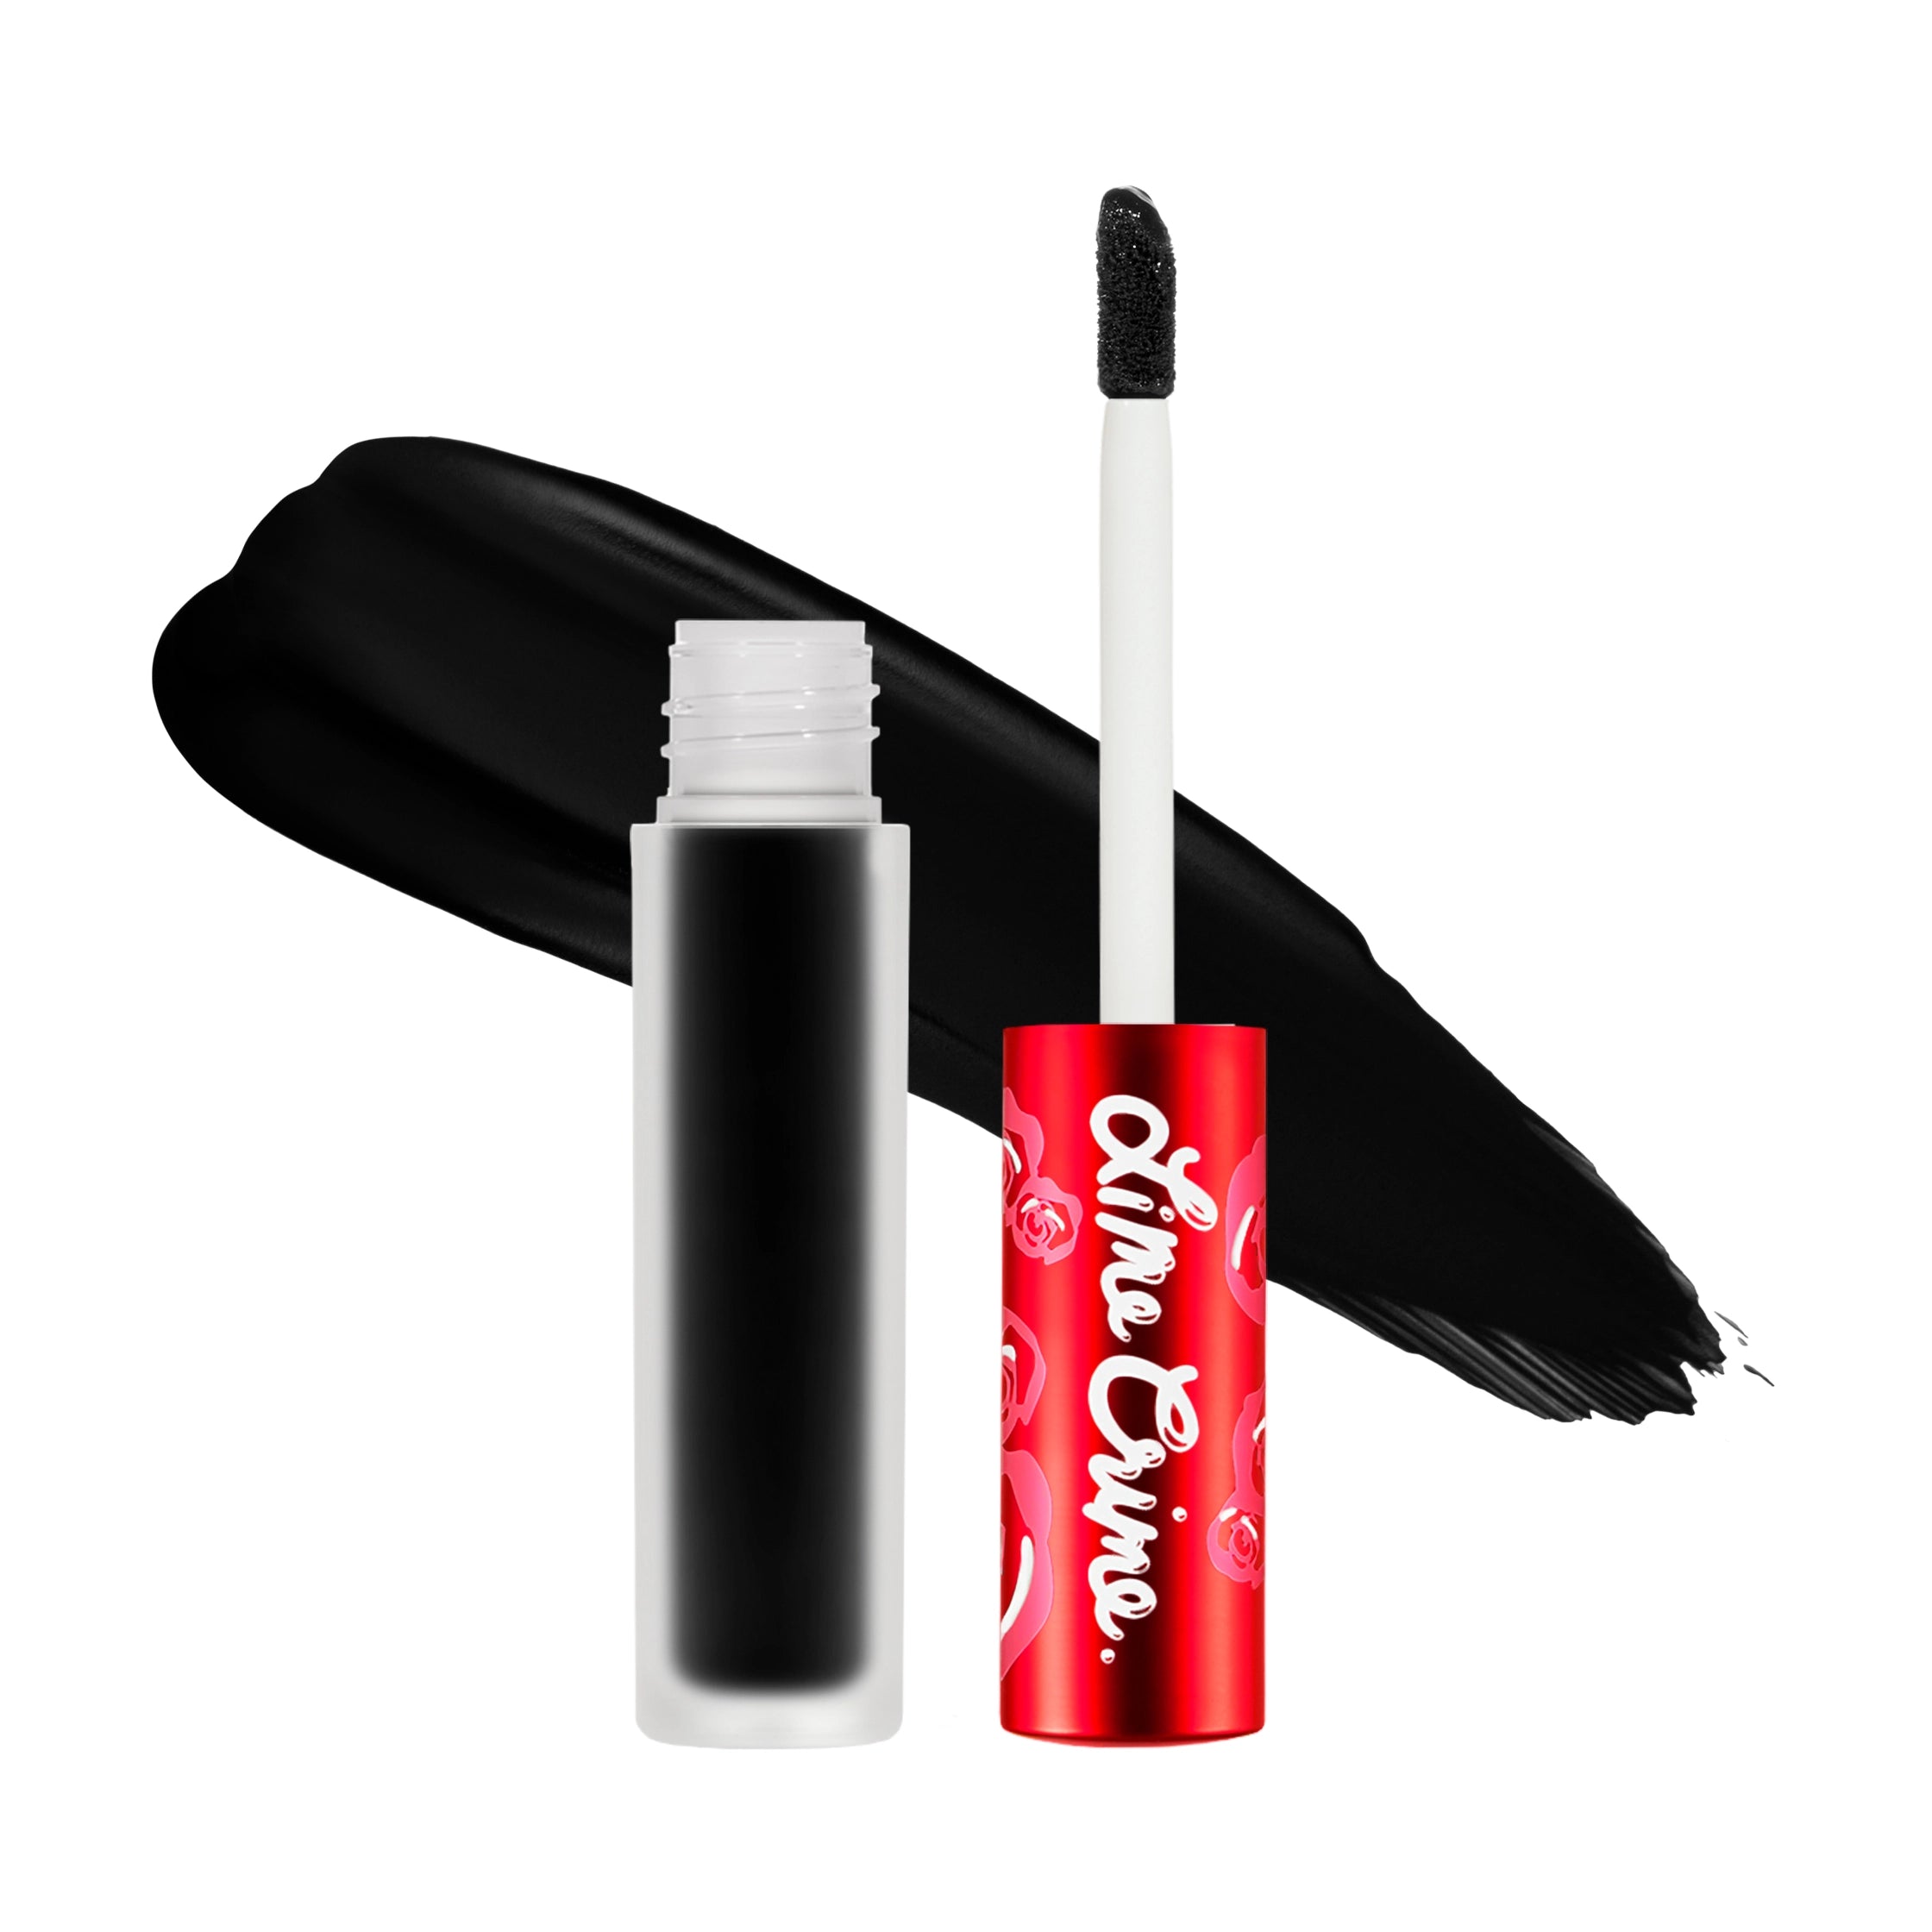 Velvetines Liquid Lipstick variant:Black Velvet